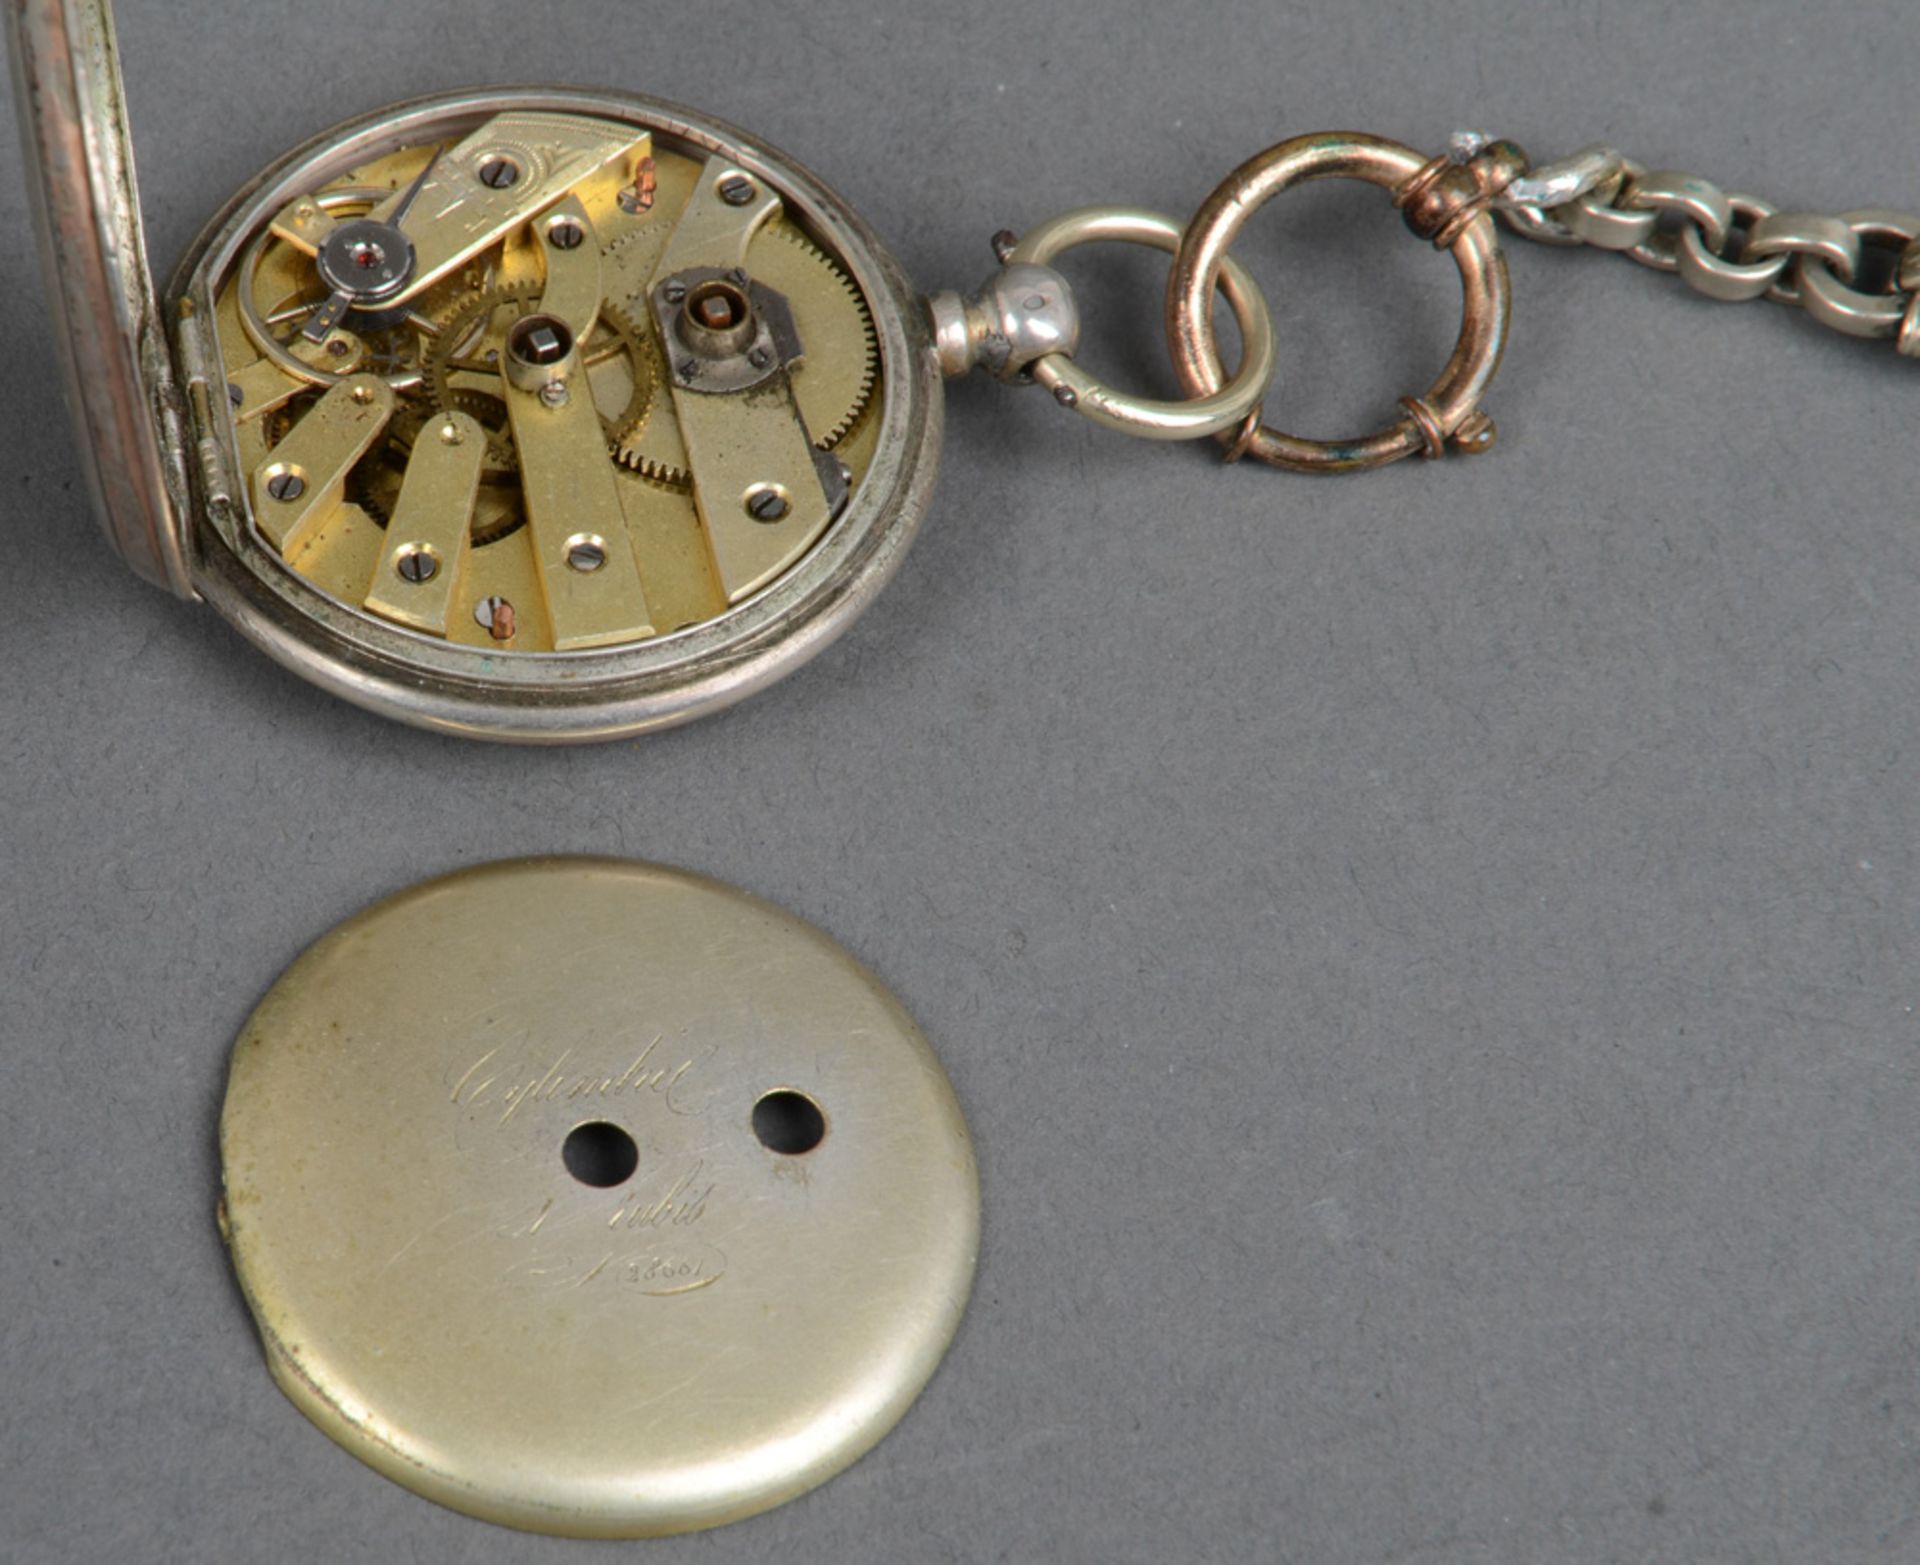 Herrentaschenuhr mit doppeltem Schlüsselaufzug, Silbergehäuse mit Steinbesatz; dazu versilberte Uhre - Bild 2 aus 2